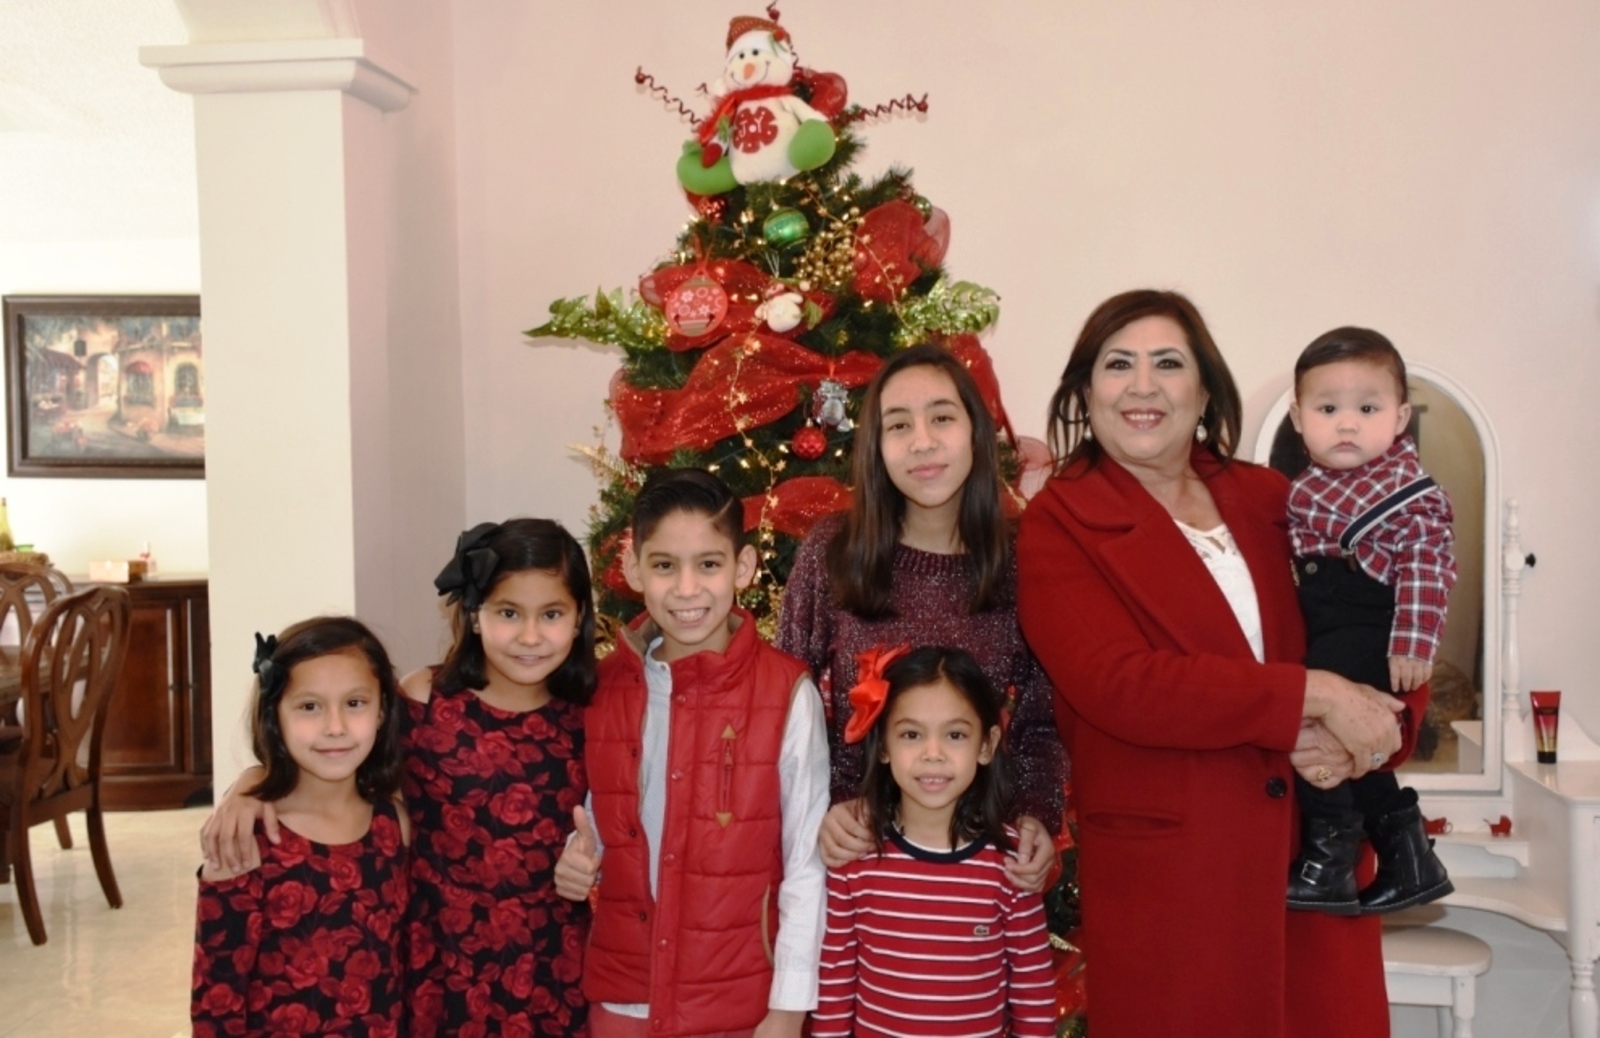 Mensaje. La alcaldesa, María Luisa González Achem da mensaje navideño a familias lerdenses acompañada de sus nietos.